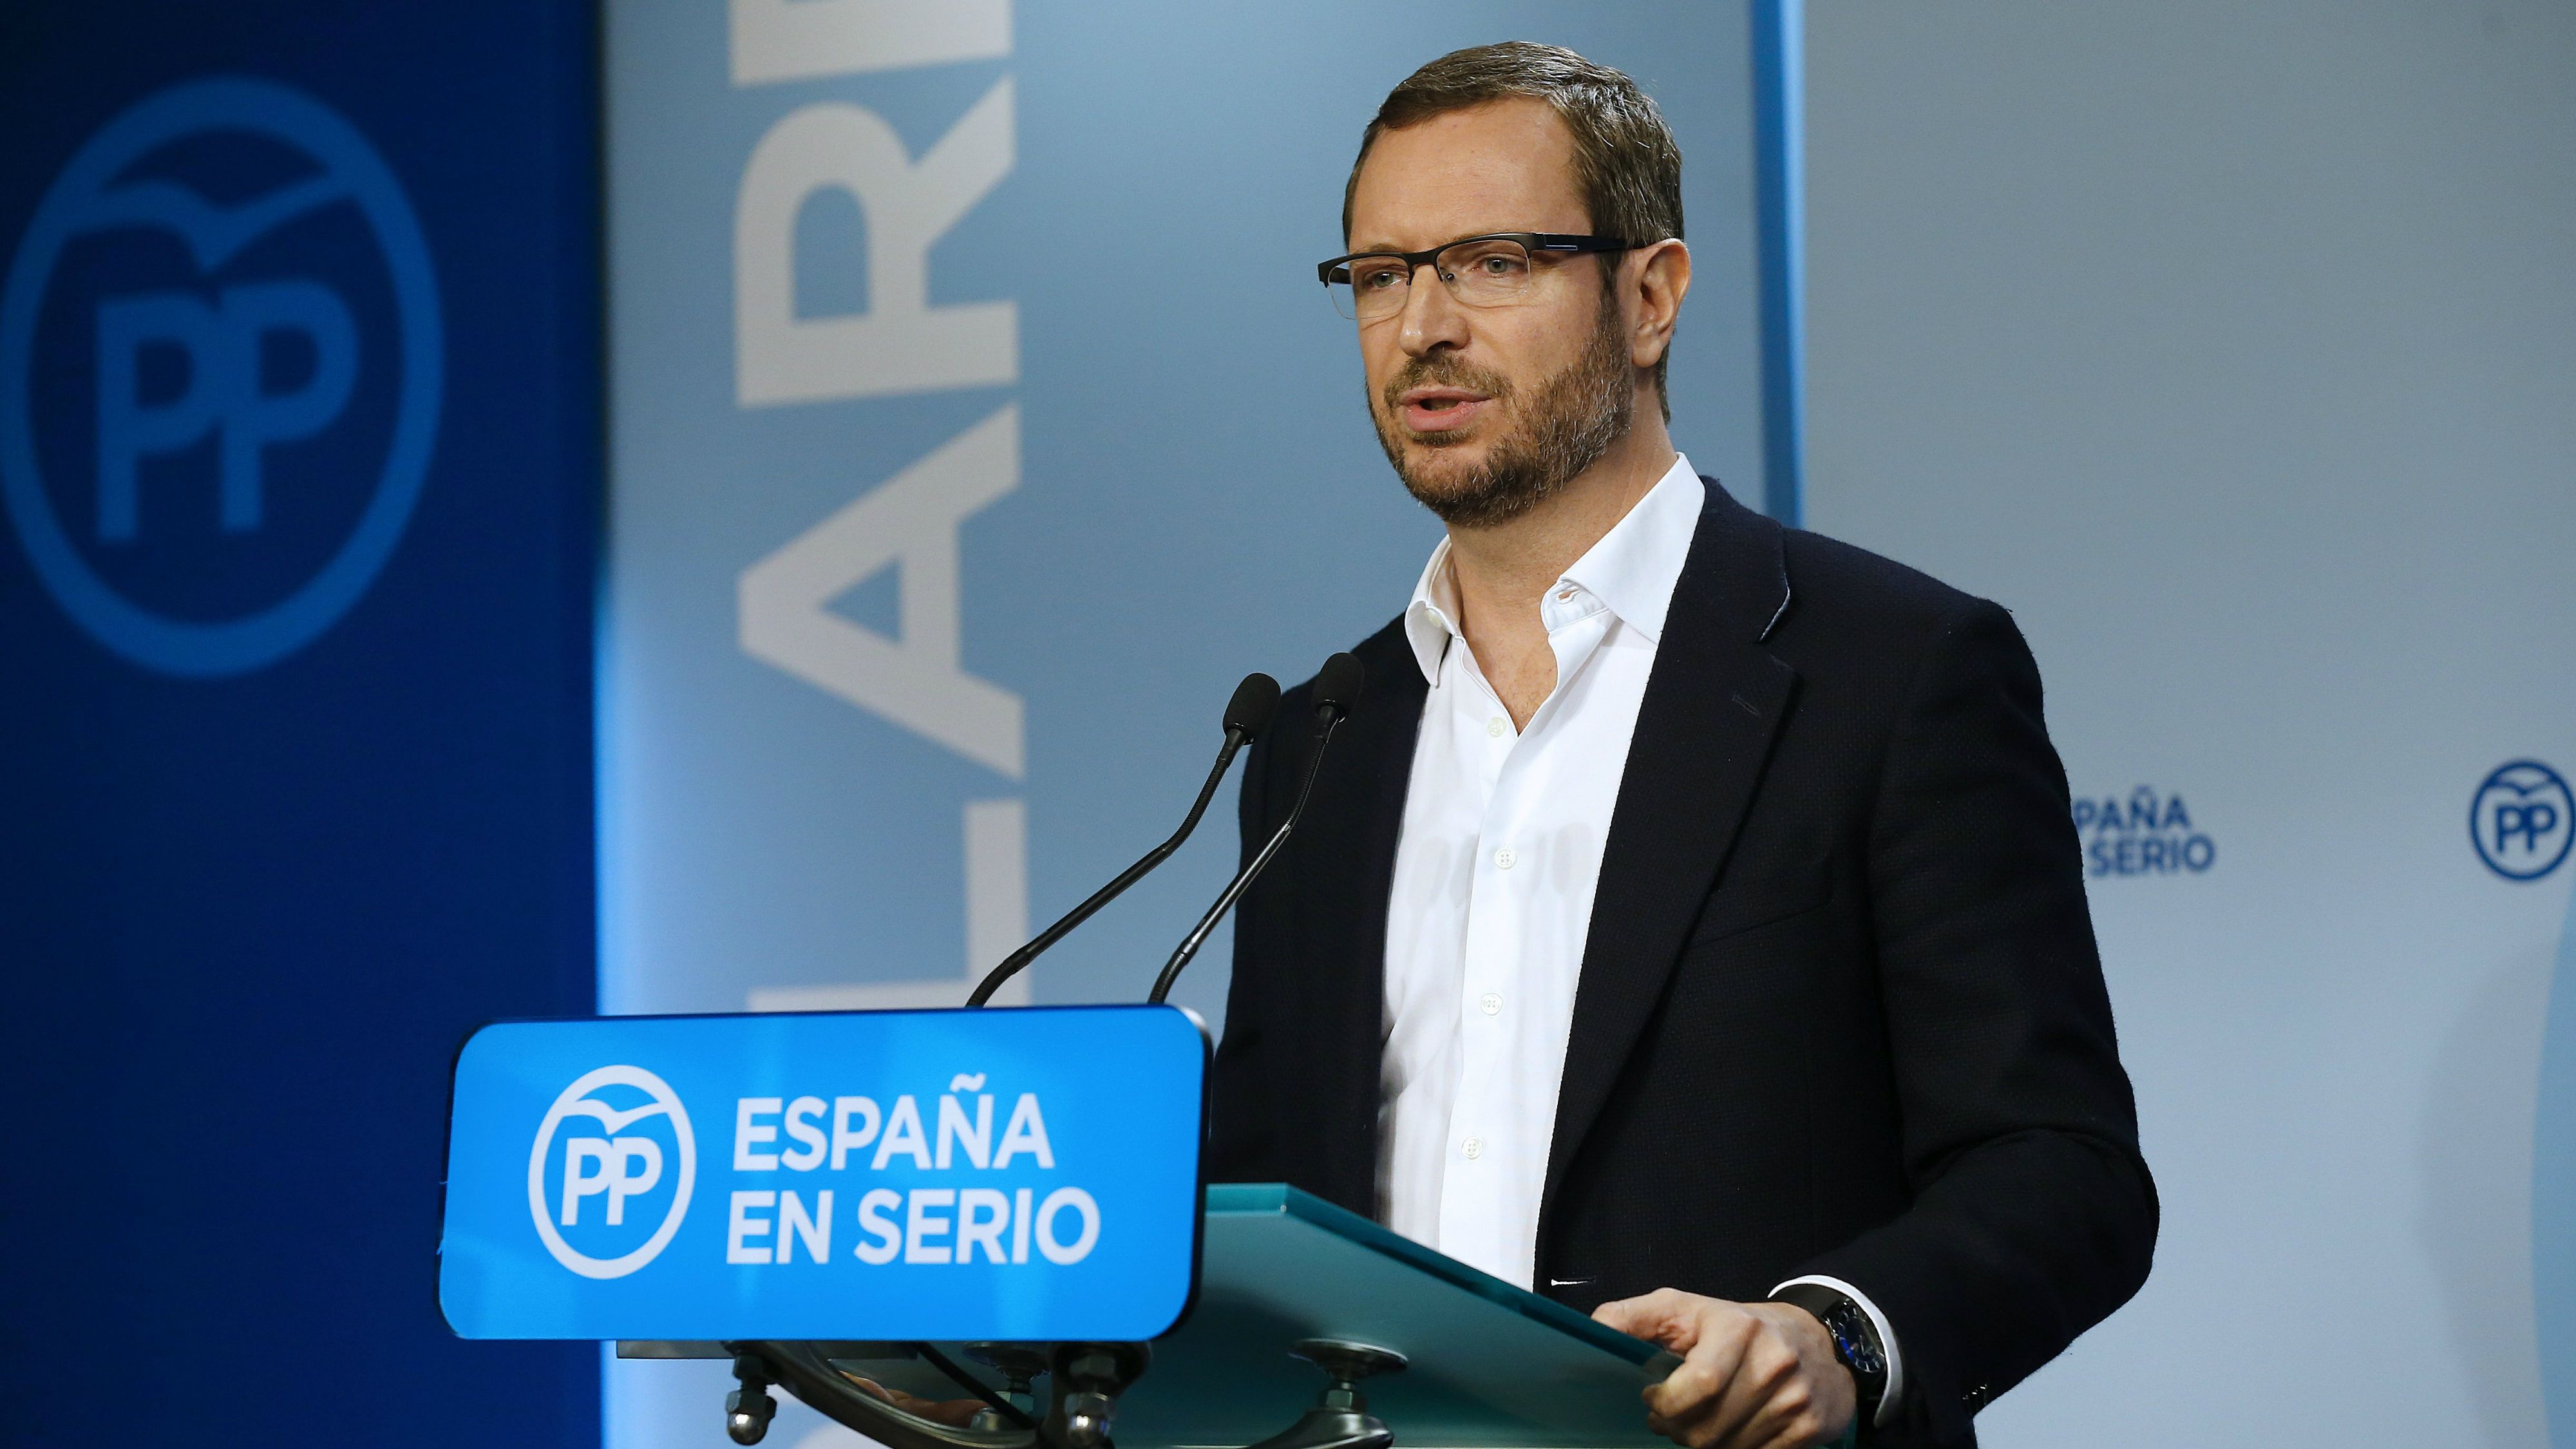 El PP no descarta que Rajoy vuelva a declinar la investidura